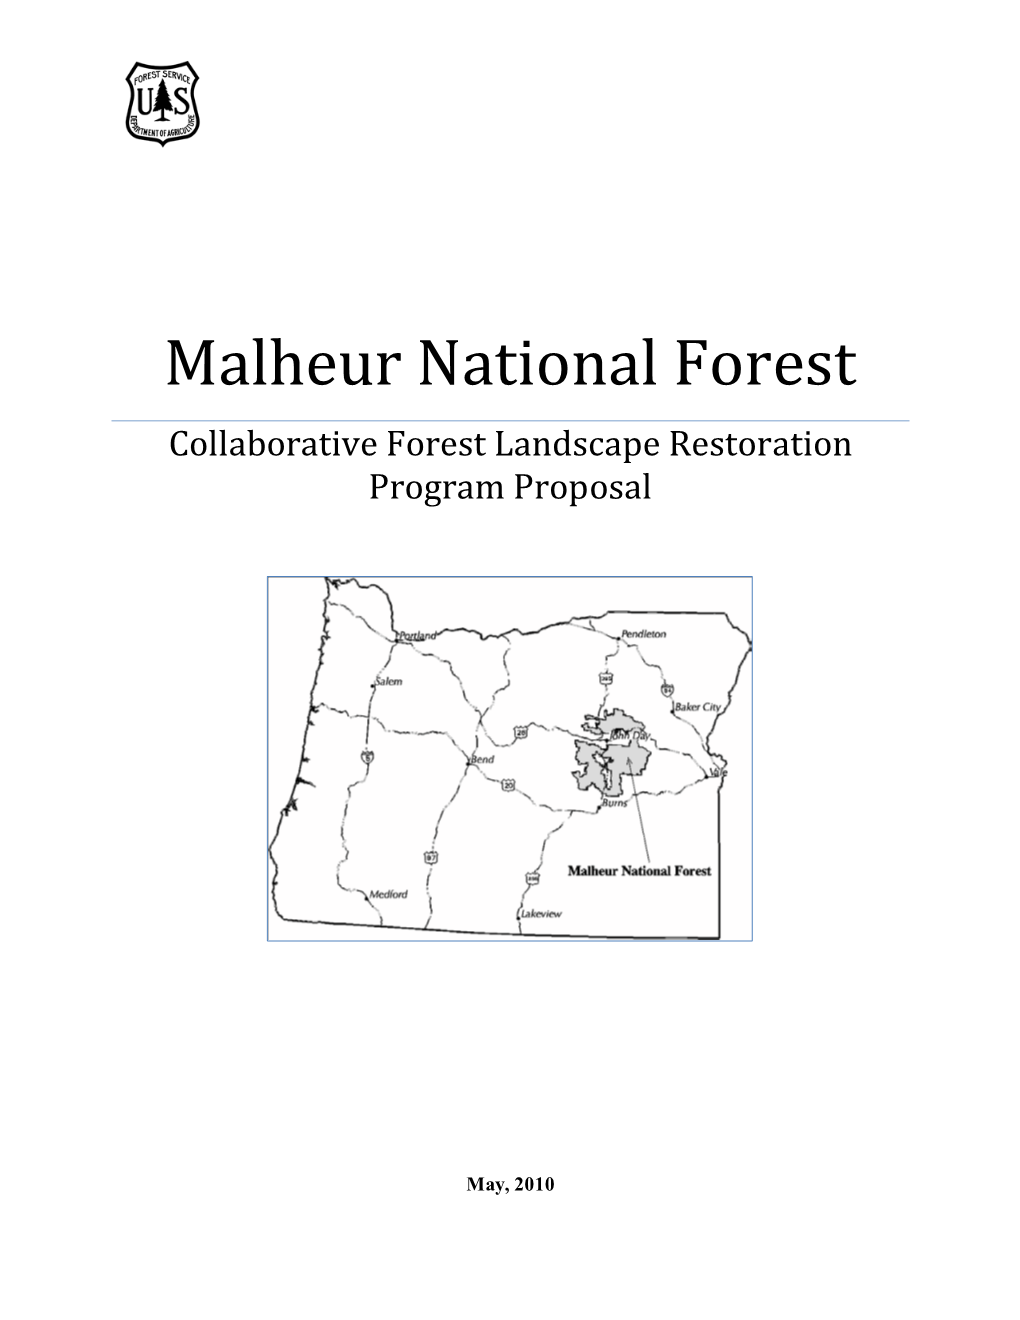 Malheur National Forest Collaborative Forest Landscape Restoration Program Proposal